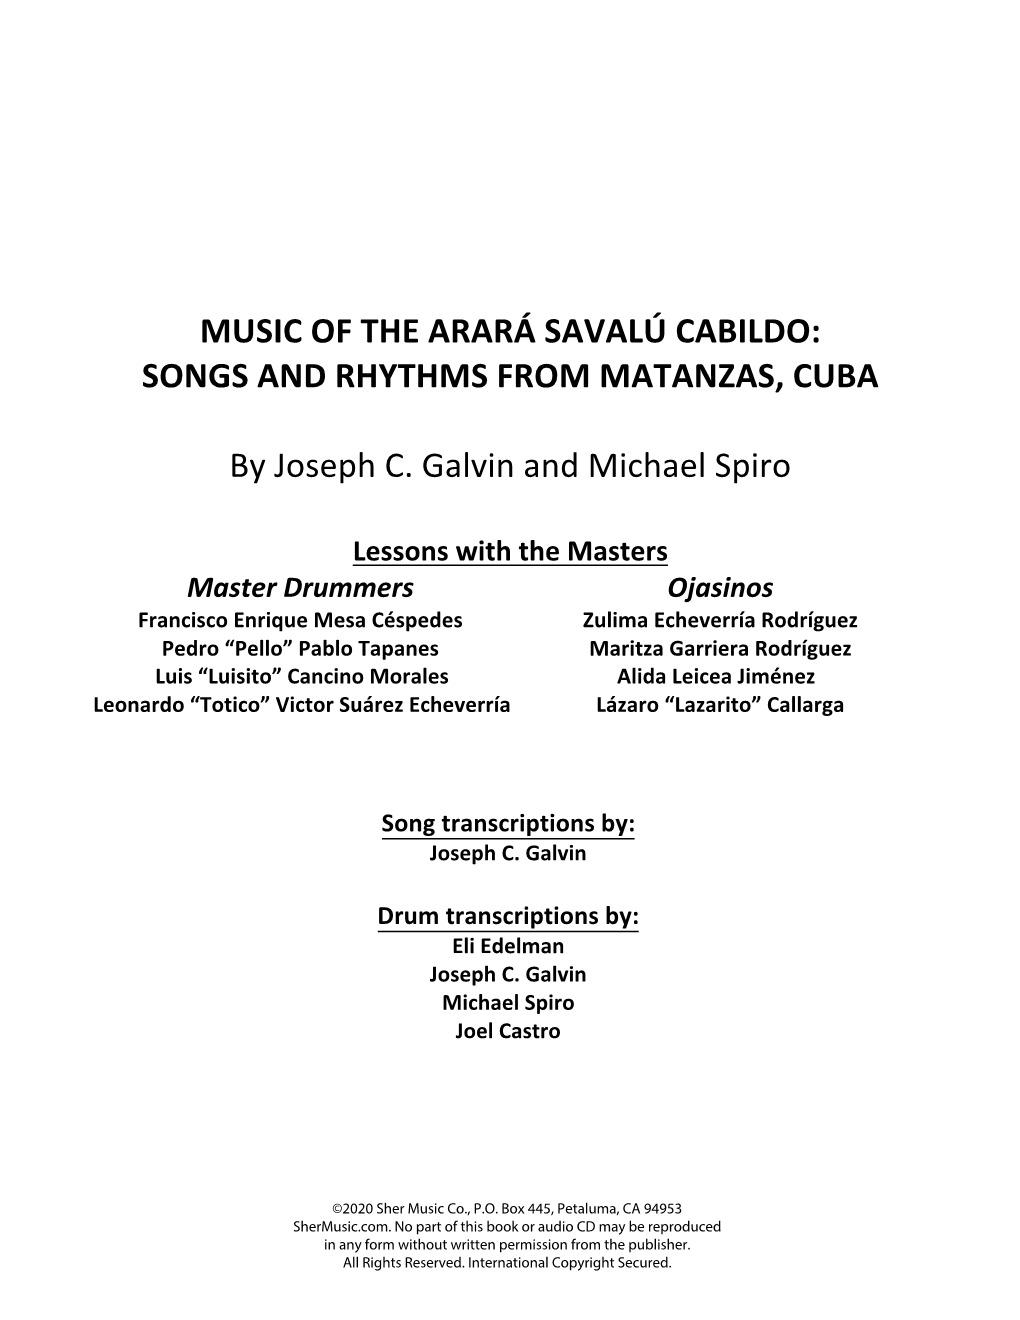 Music of the Arará Savalú Cabildo: Songs and Rhythms from Matanzas, Cuba